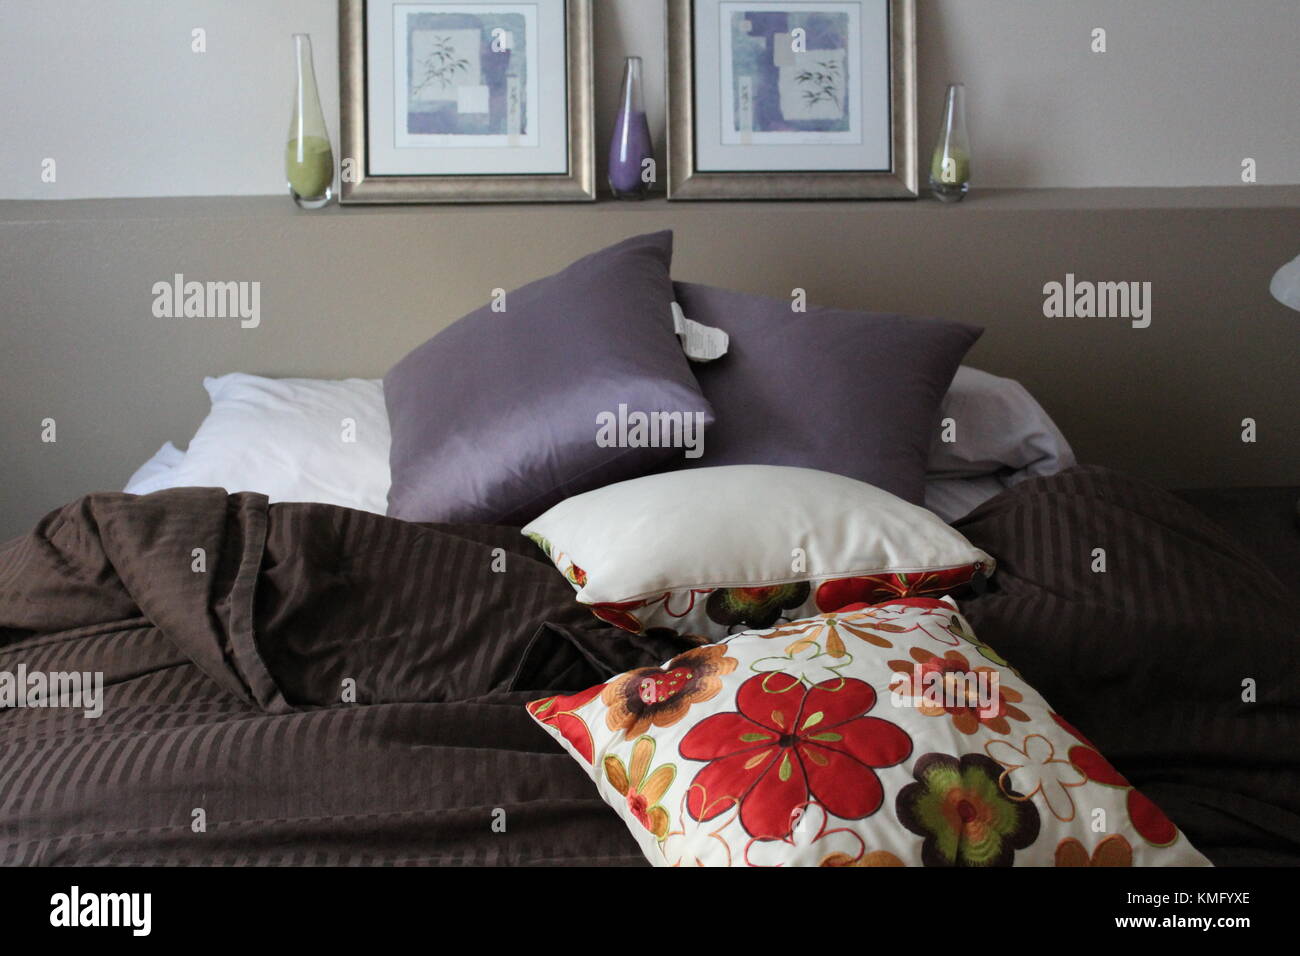 https://c8.alamy.com/comp/KMFYXE/bedroom-scene-KMFYXE.jpg